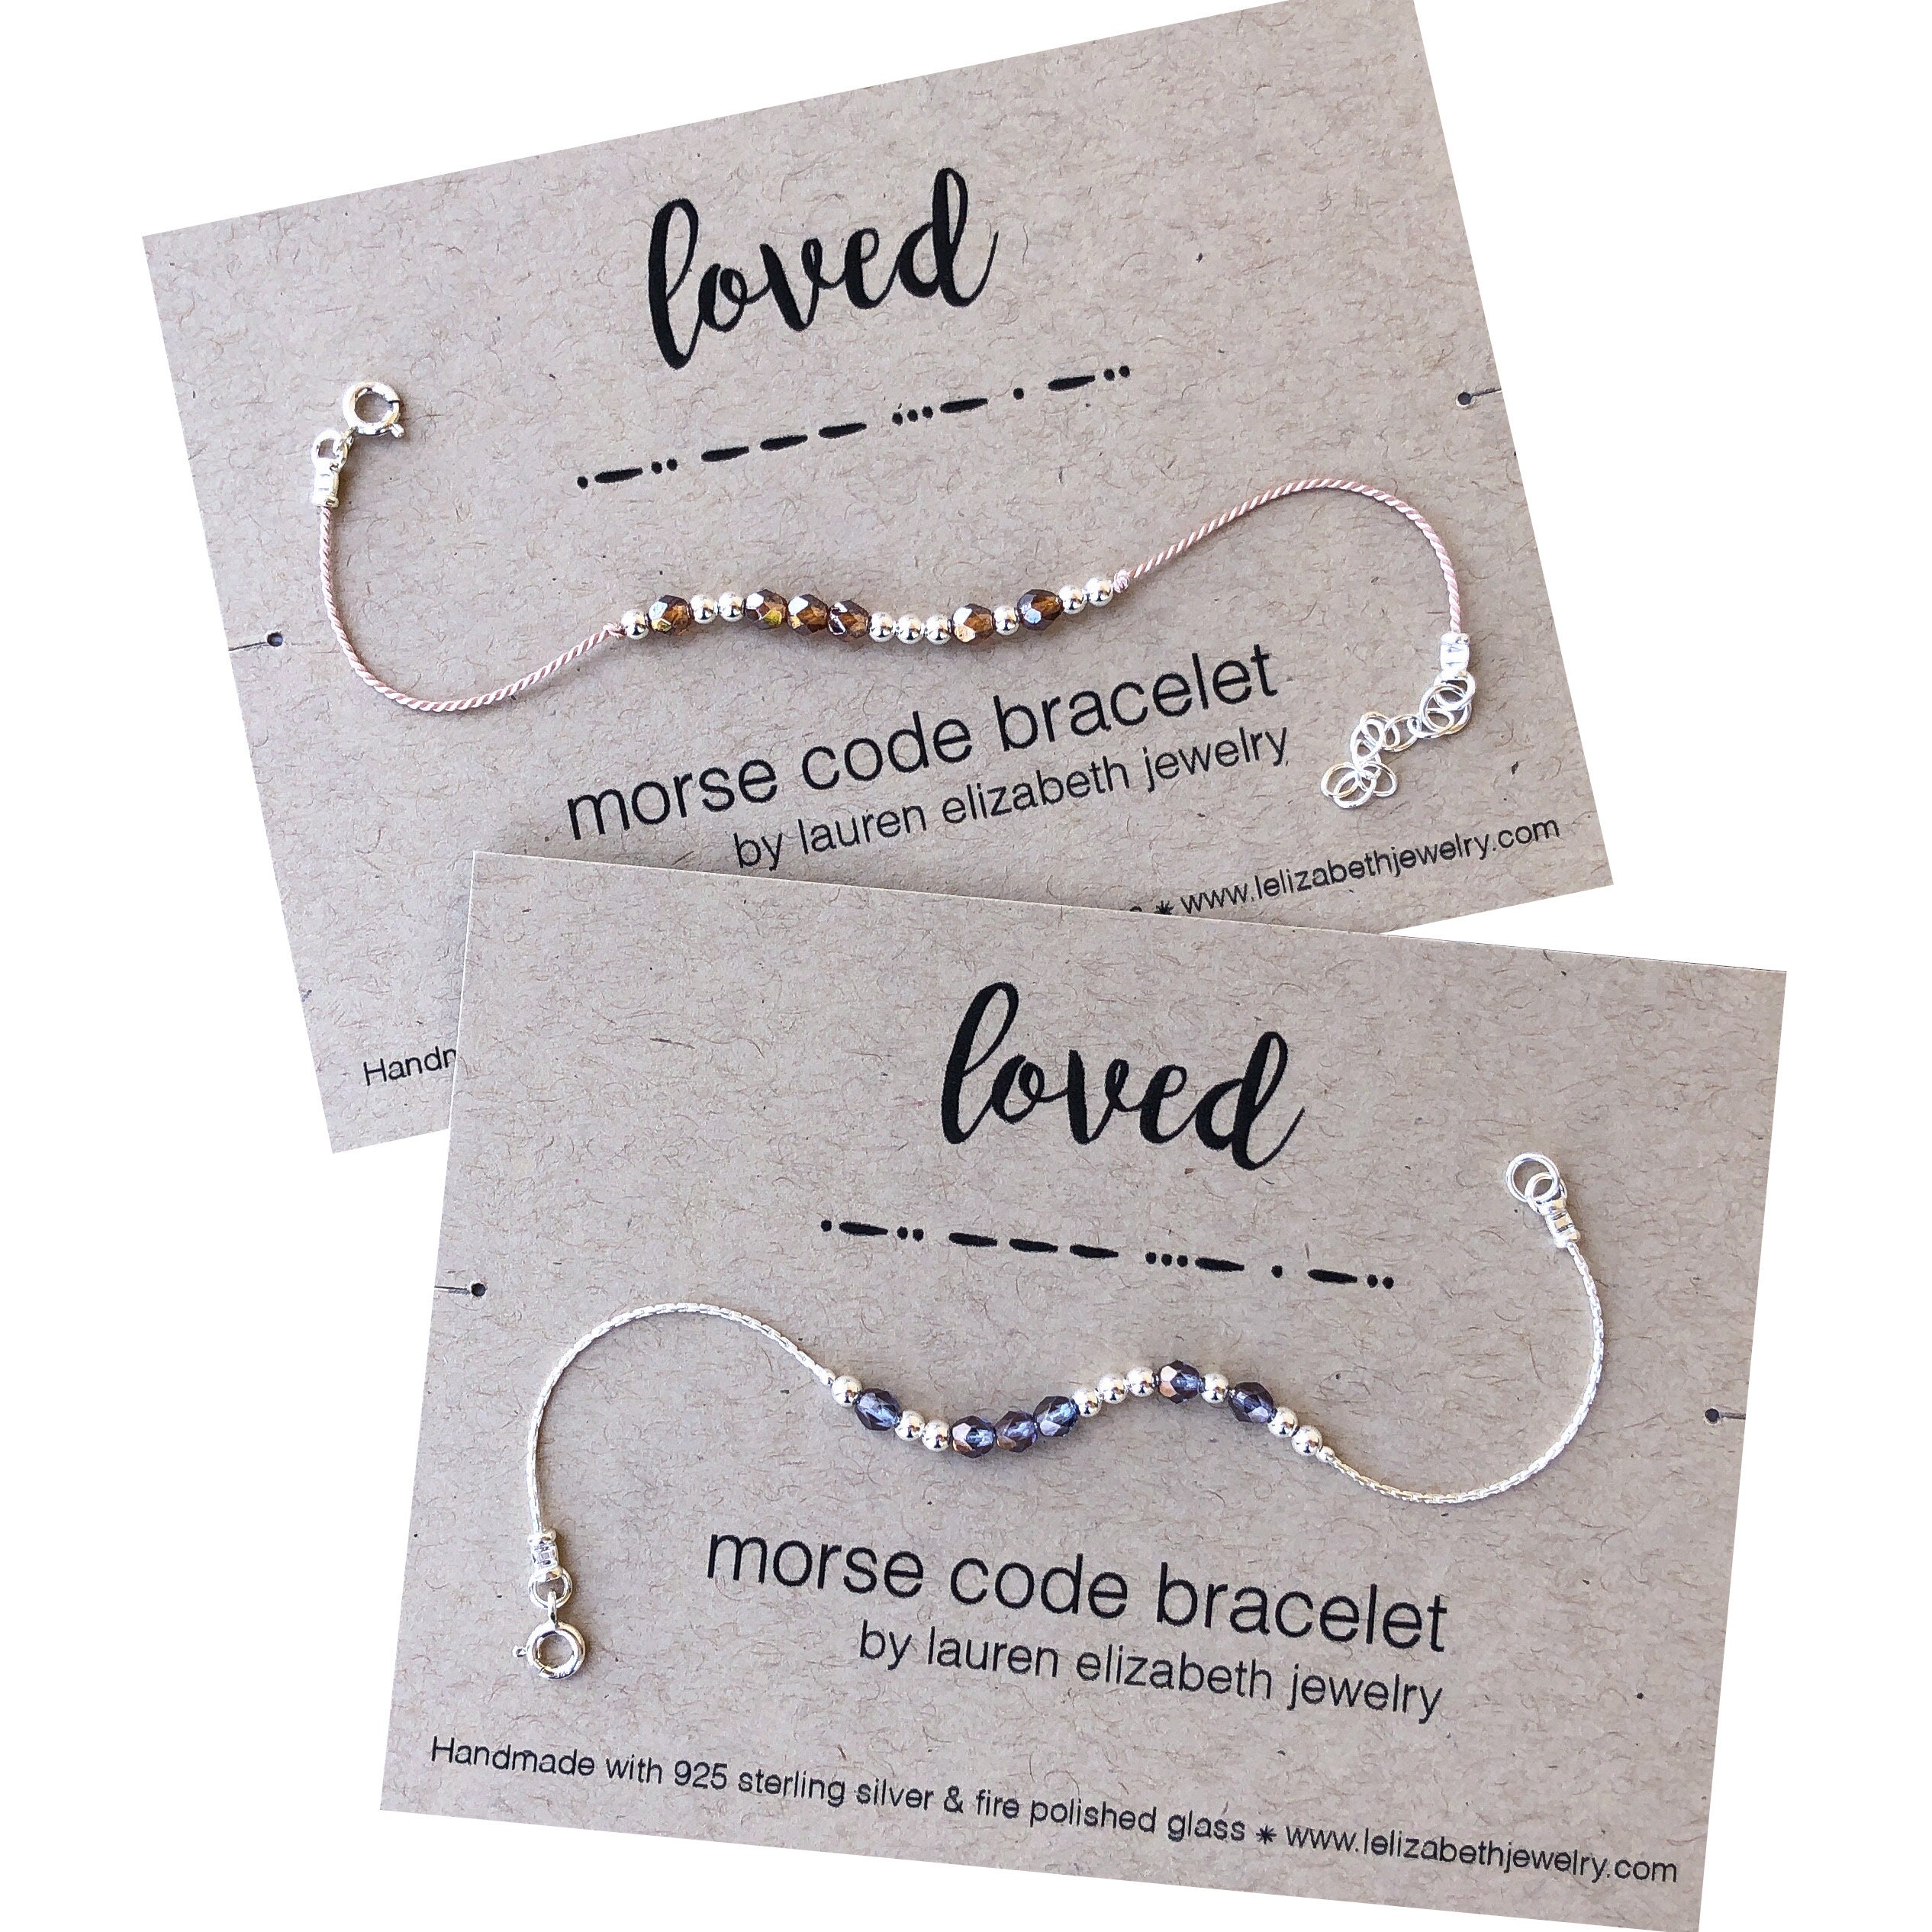 I Love You Bracelet Morse Code, Morse Code Bracelet Sterling